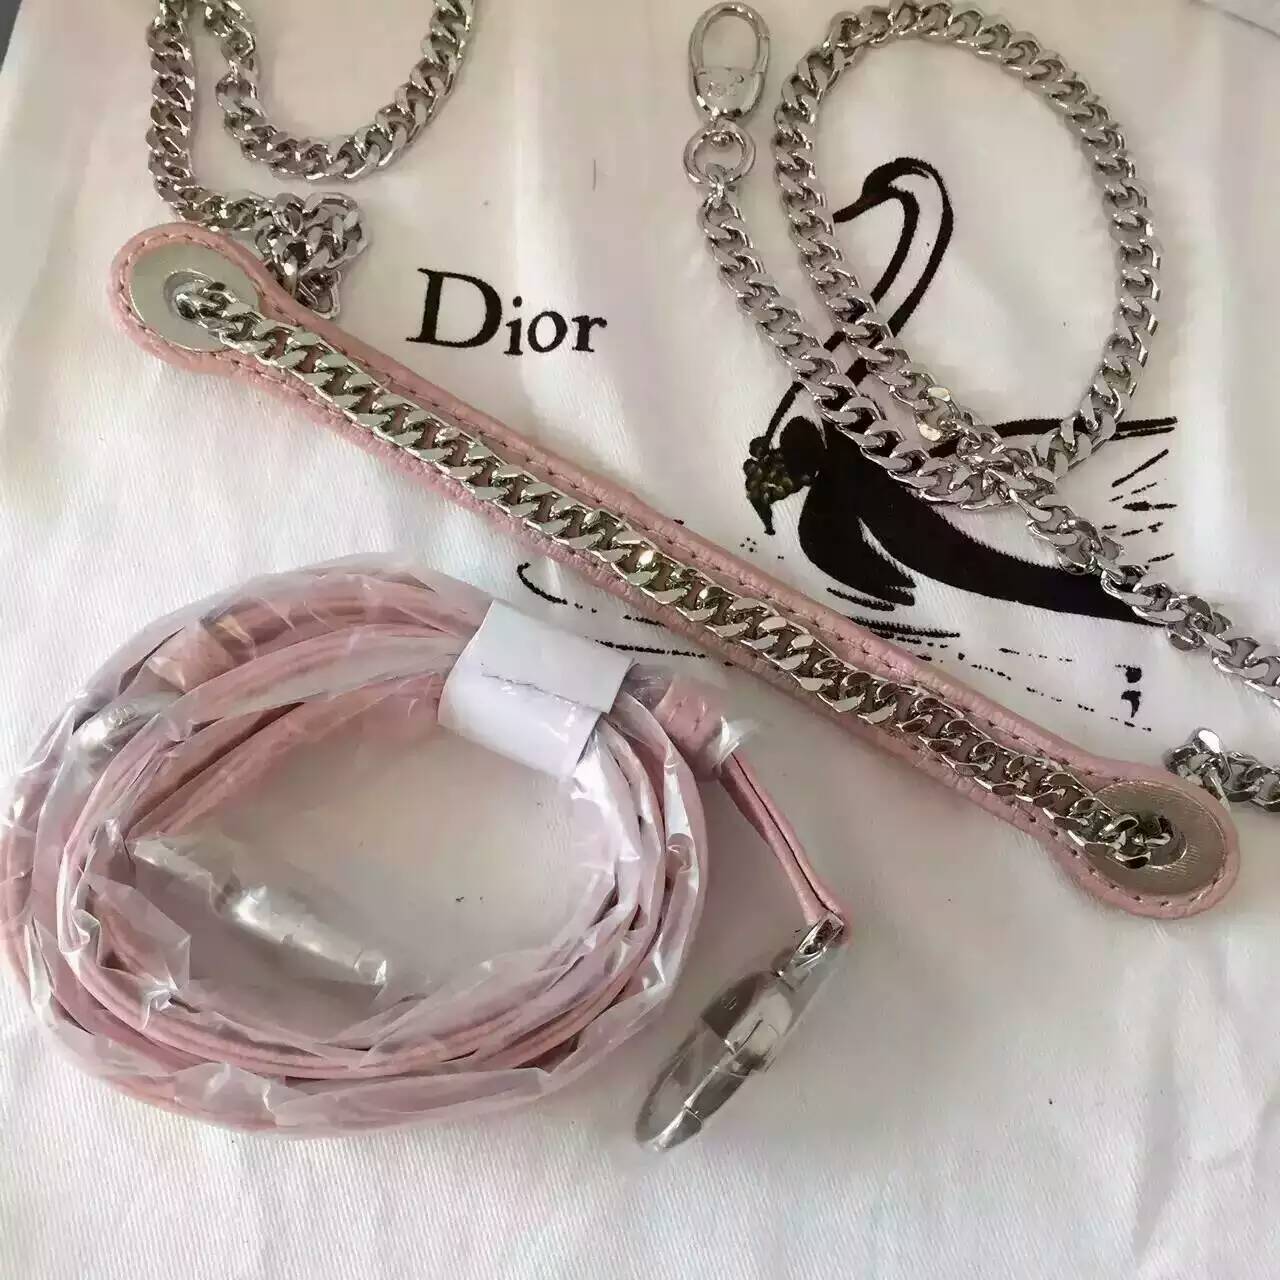 迪奥新款女包 Lady Dior mini刺绣新款粉色山羊皮戴妃包三格